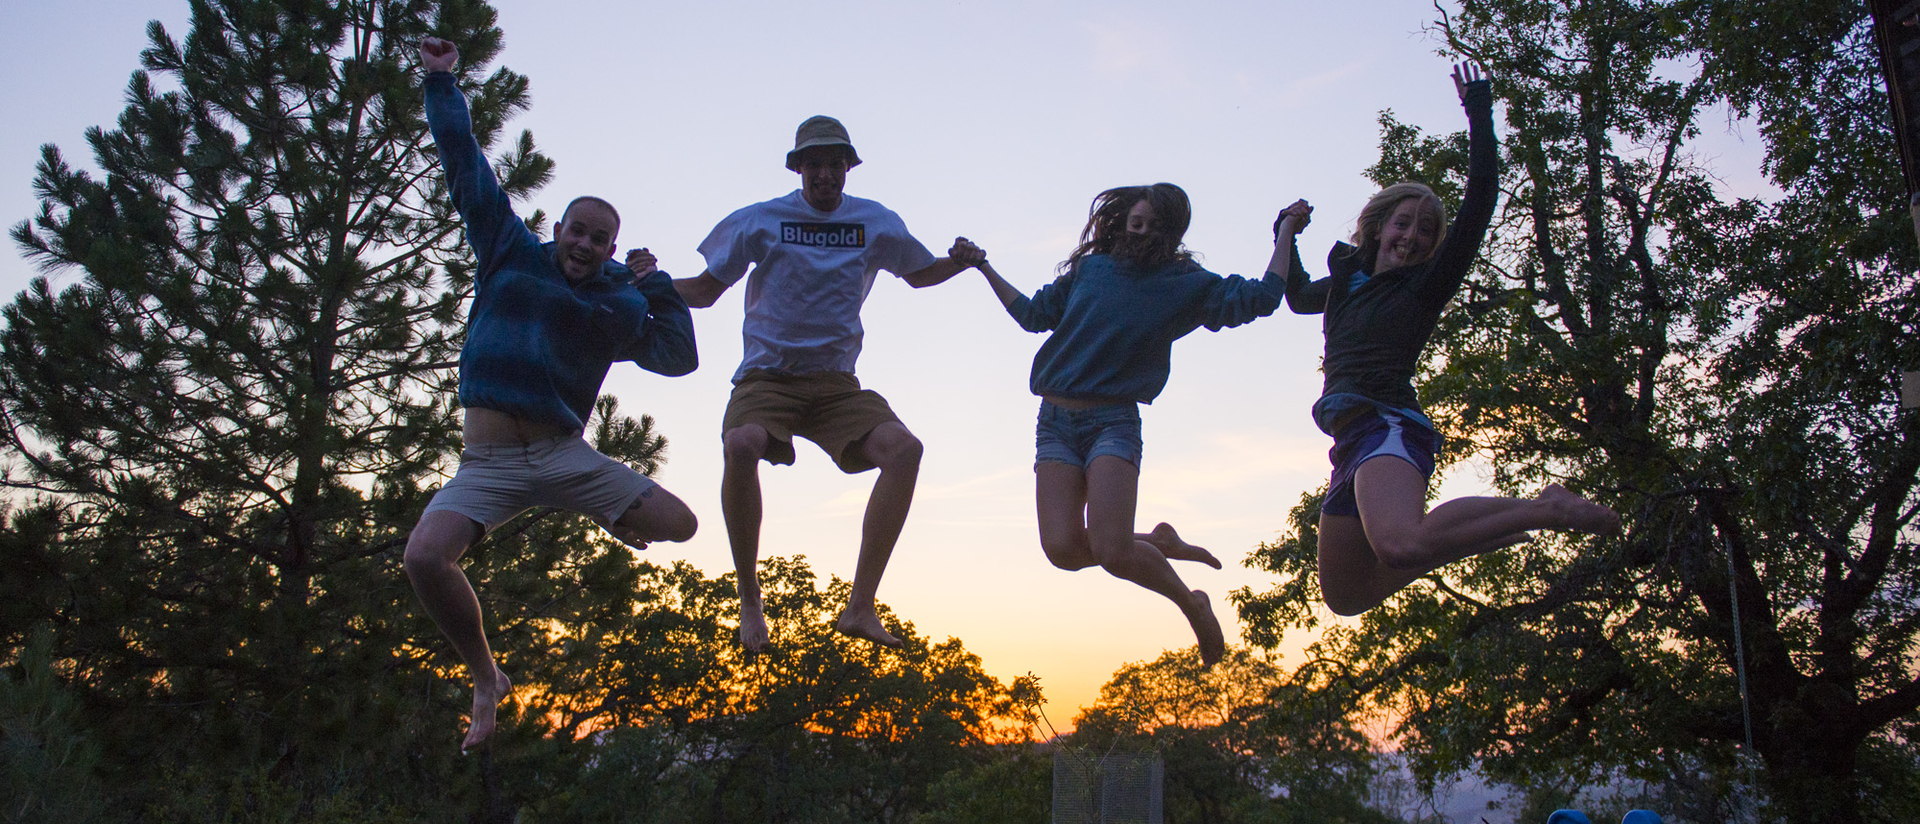 Students jumping at Yosemite National Park